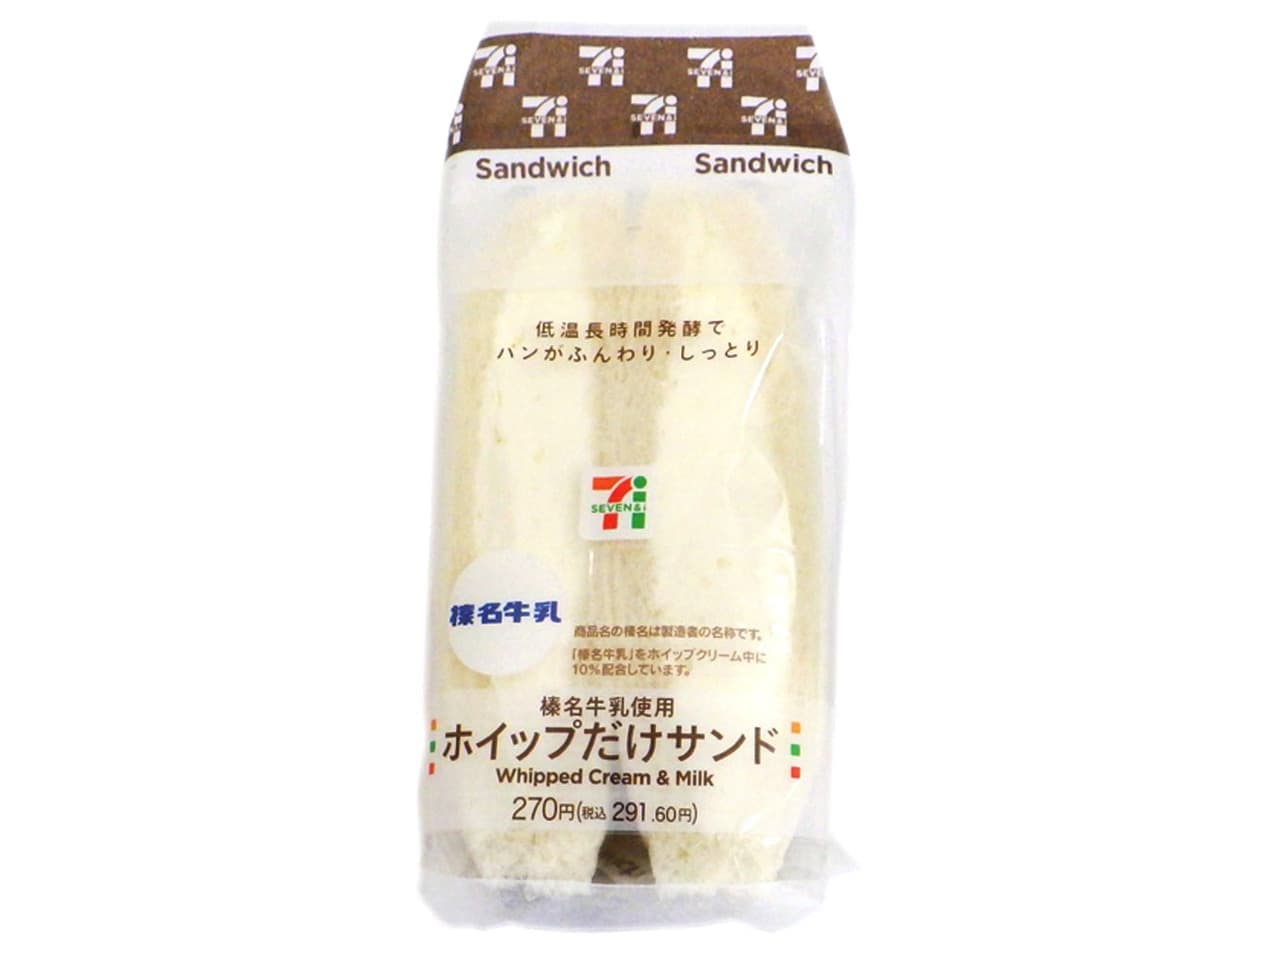 7-ELEVEN "Haruna Milk Whip Only Sandwich